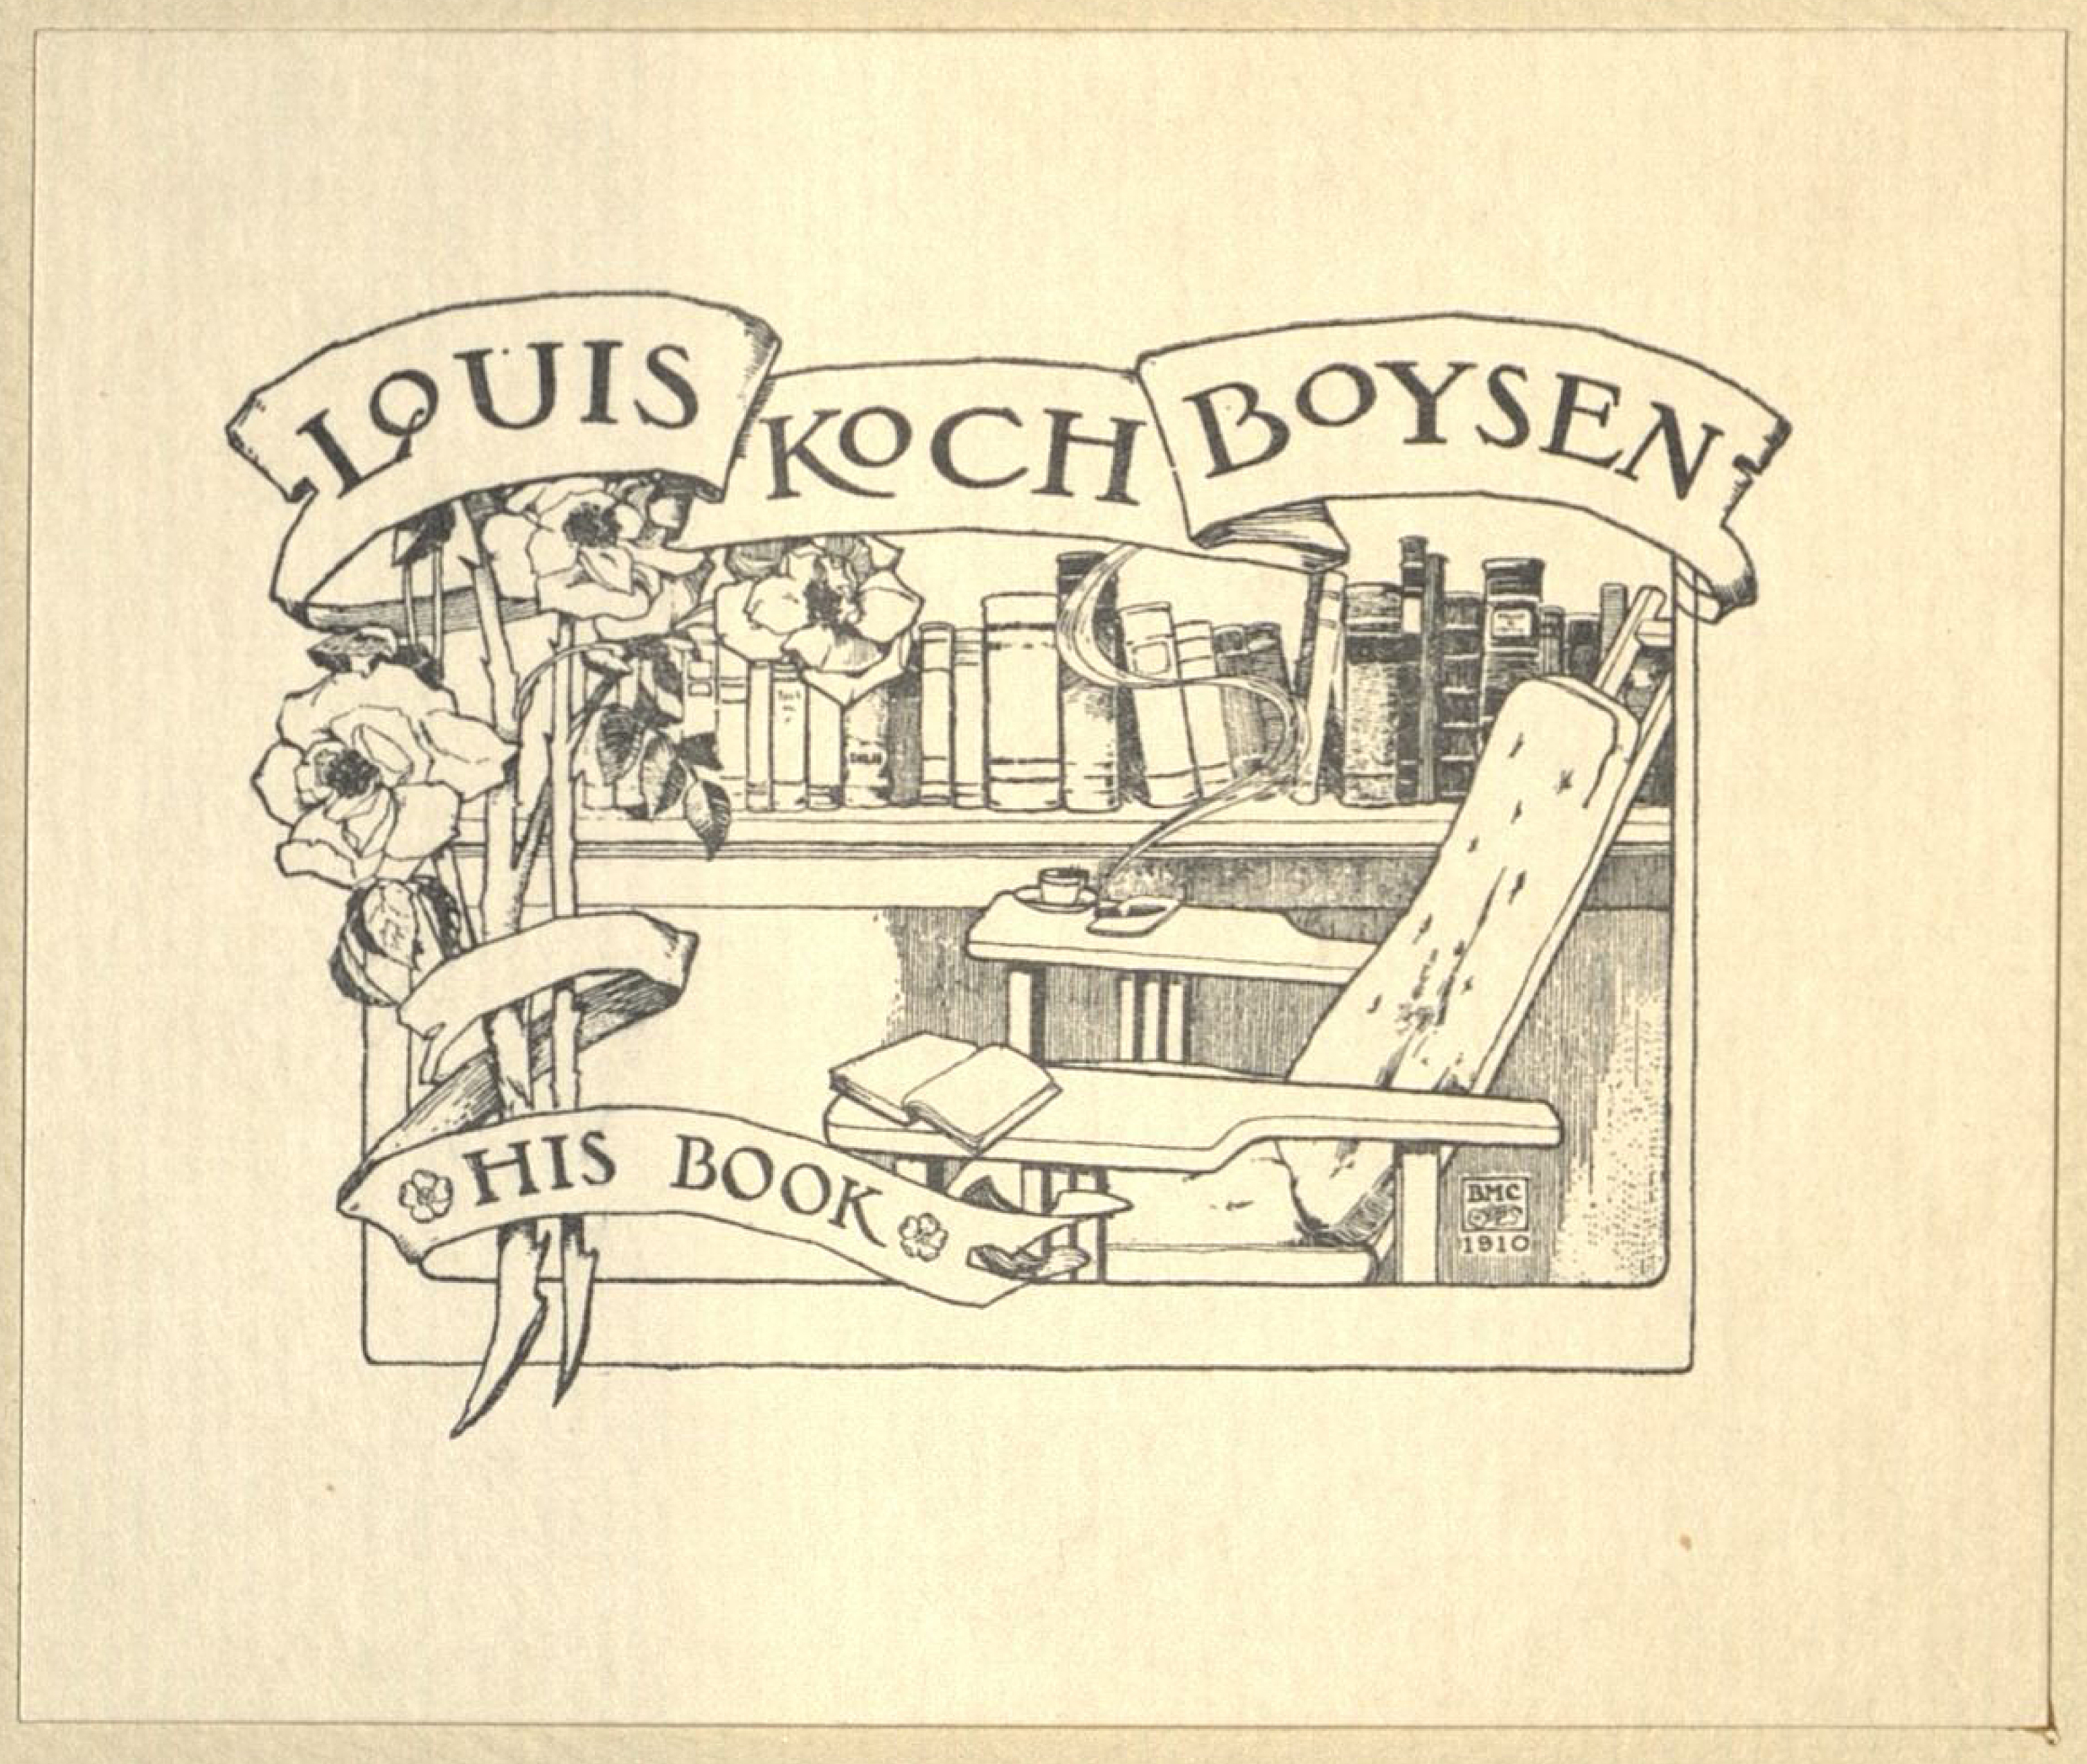 Bookplate of Louis Koch Boysen